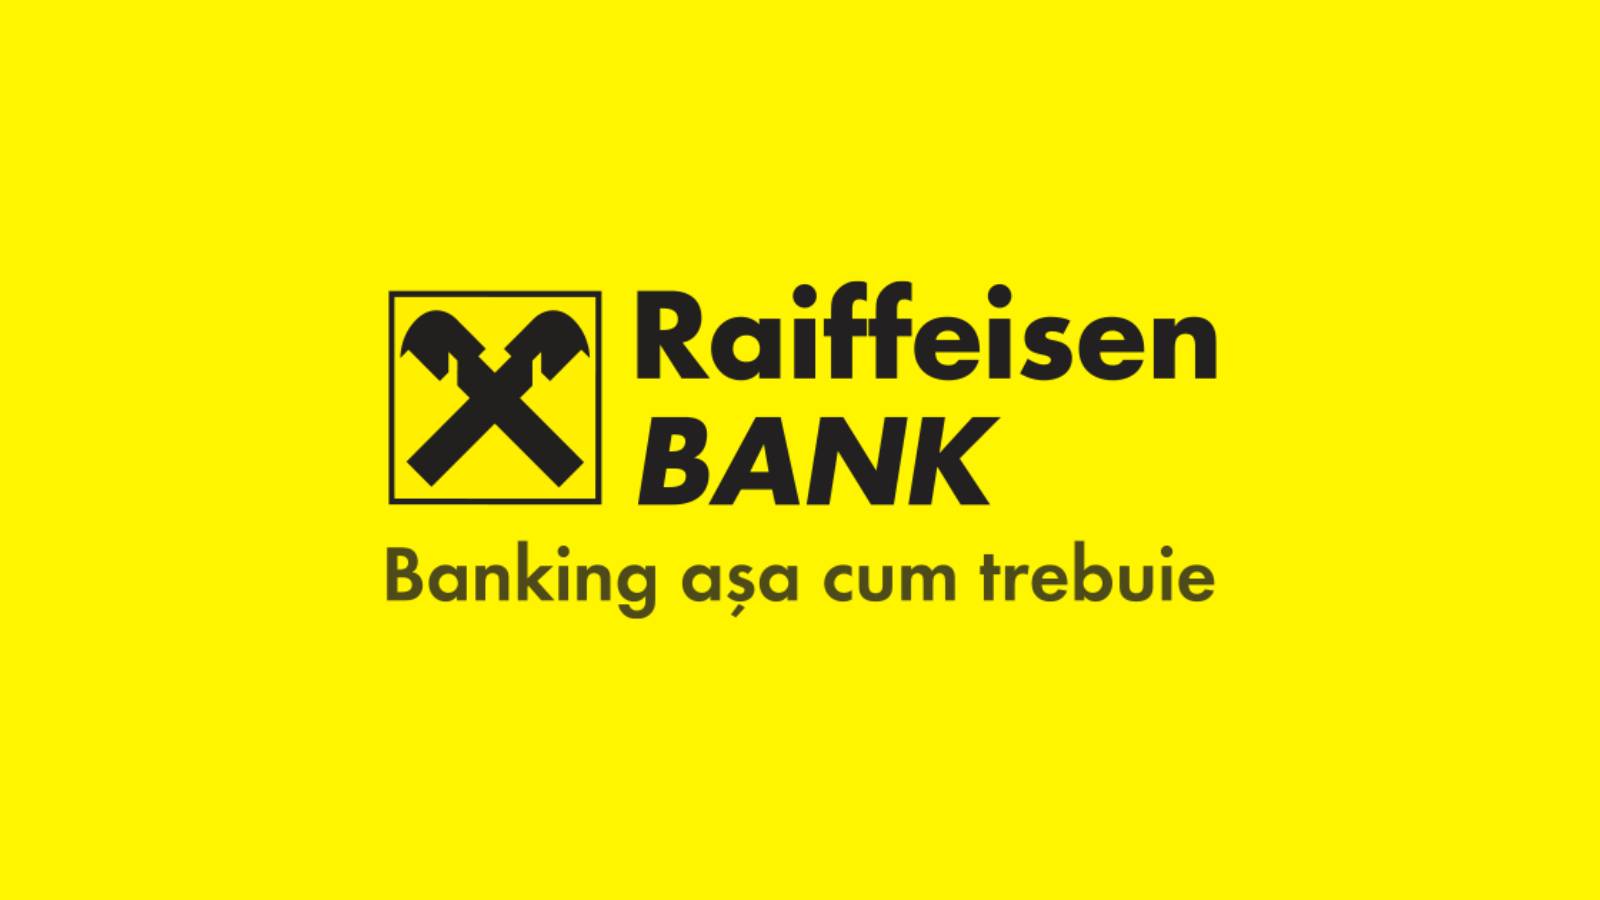 Raiffeisen Bank Romani decision FREE All Romania